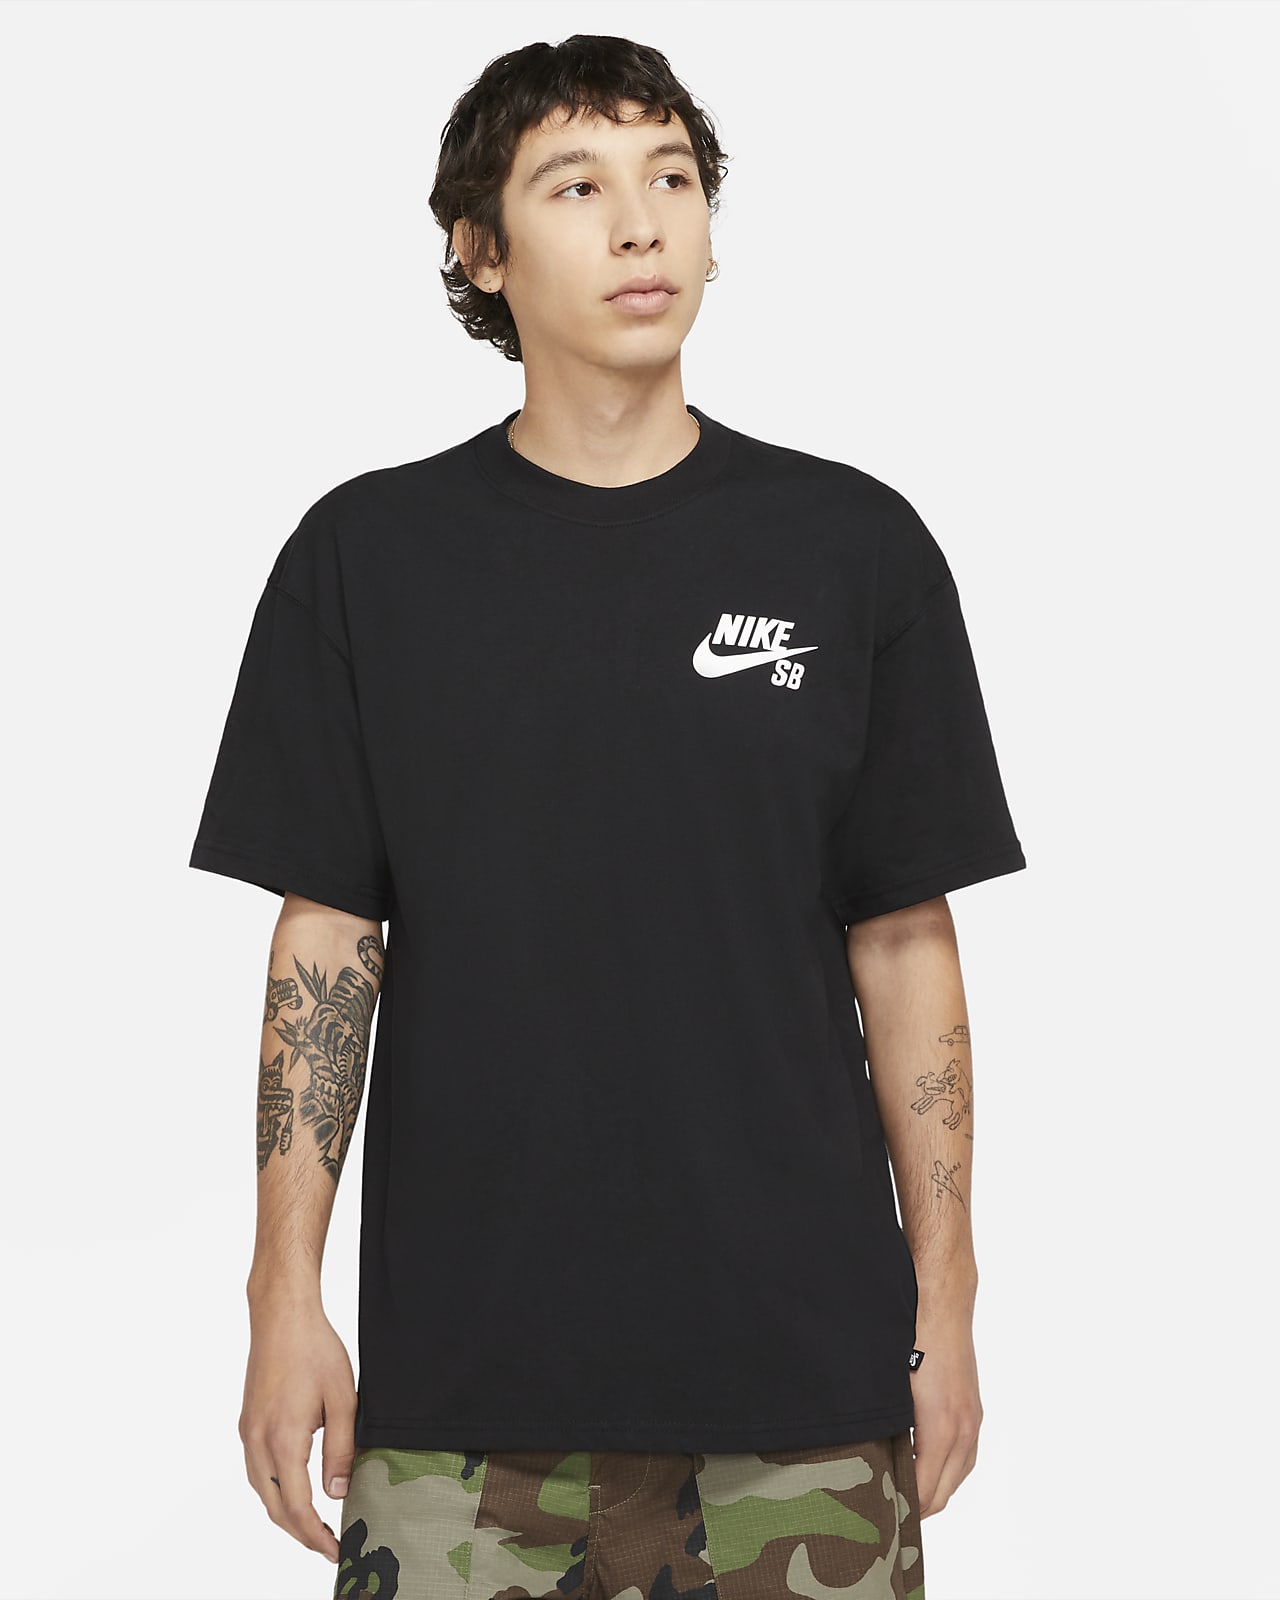 Nike SB-skater-T-shirt med logo